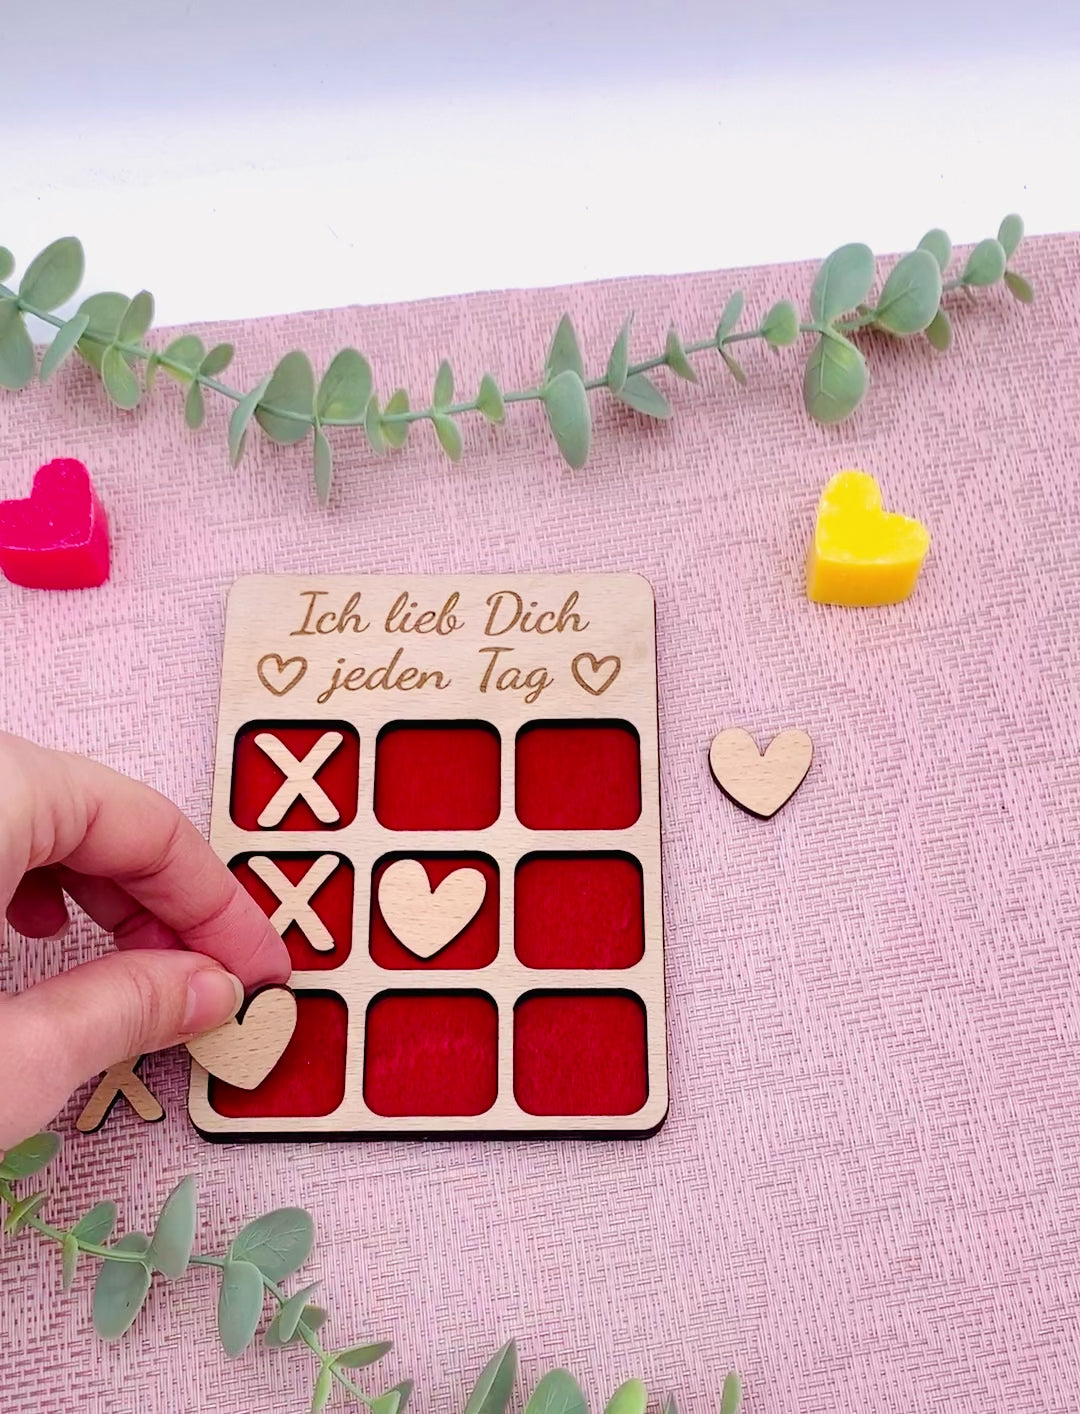 Geschenk Valentinstag - 3 Gewinnt Holz - Tic Tac Toe Holz Brettspiel - Brettspiel personalisiert - Reisespiel - OXO Spiel für Verliebte